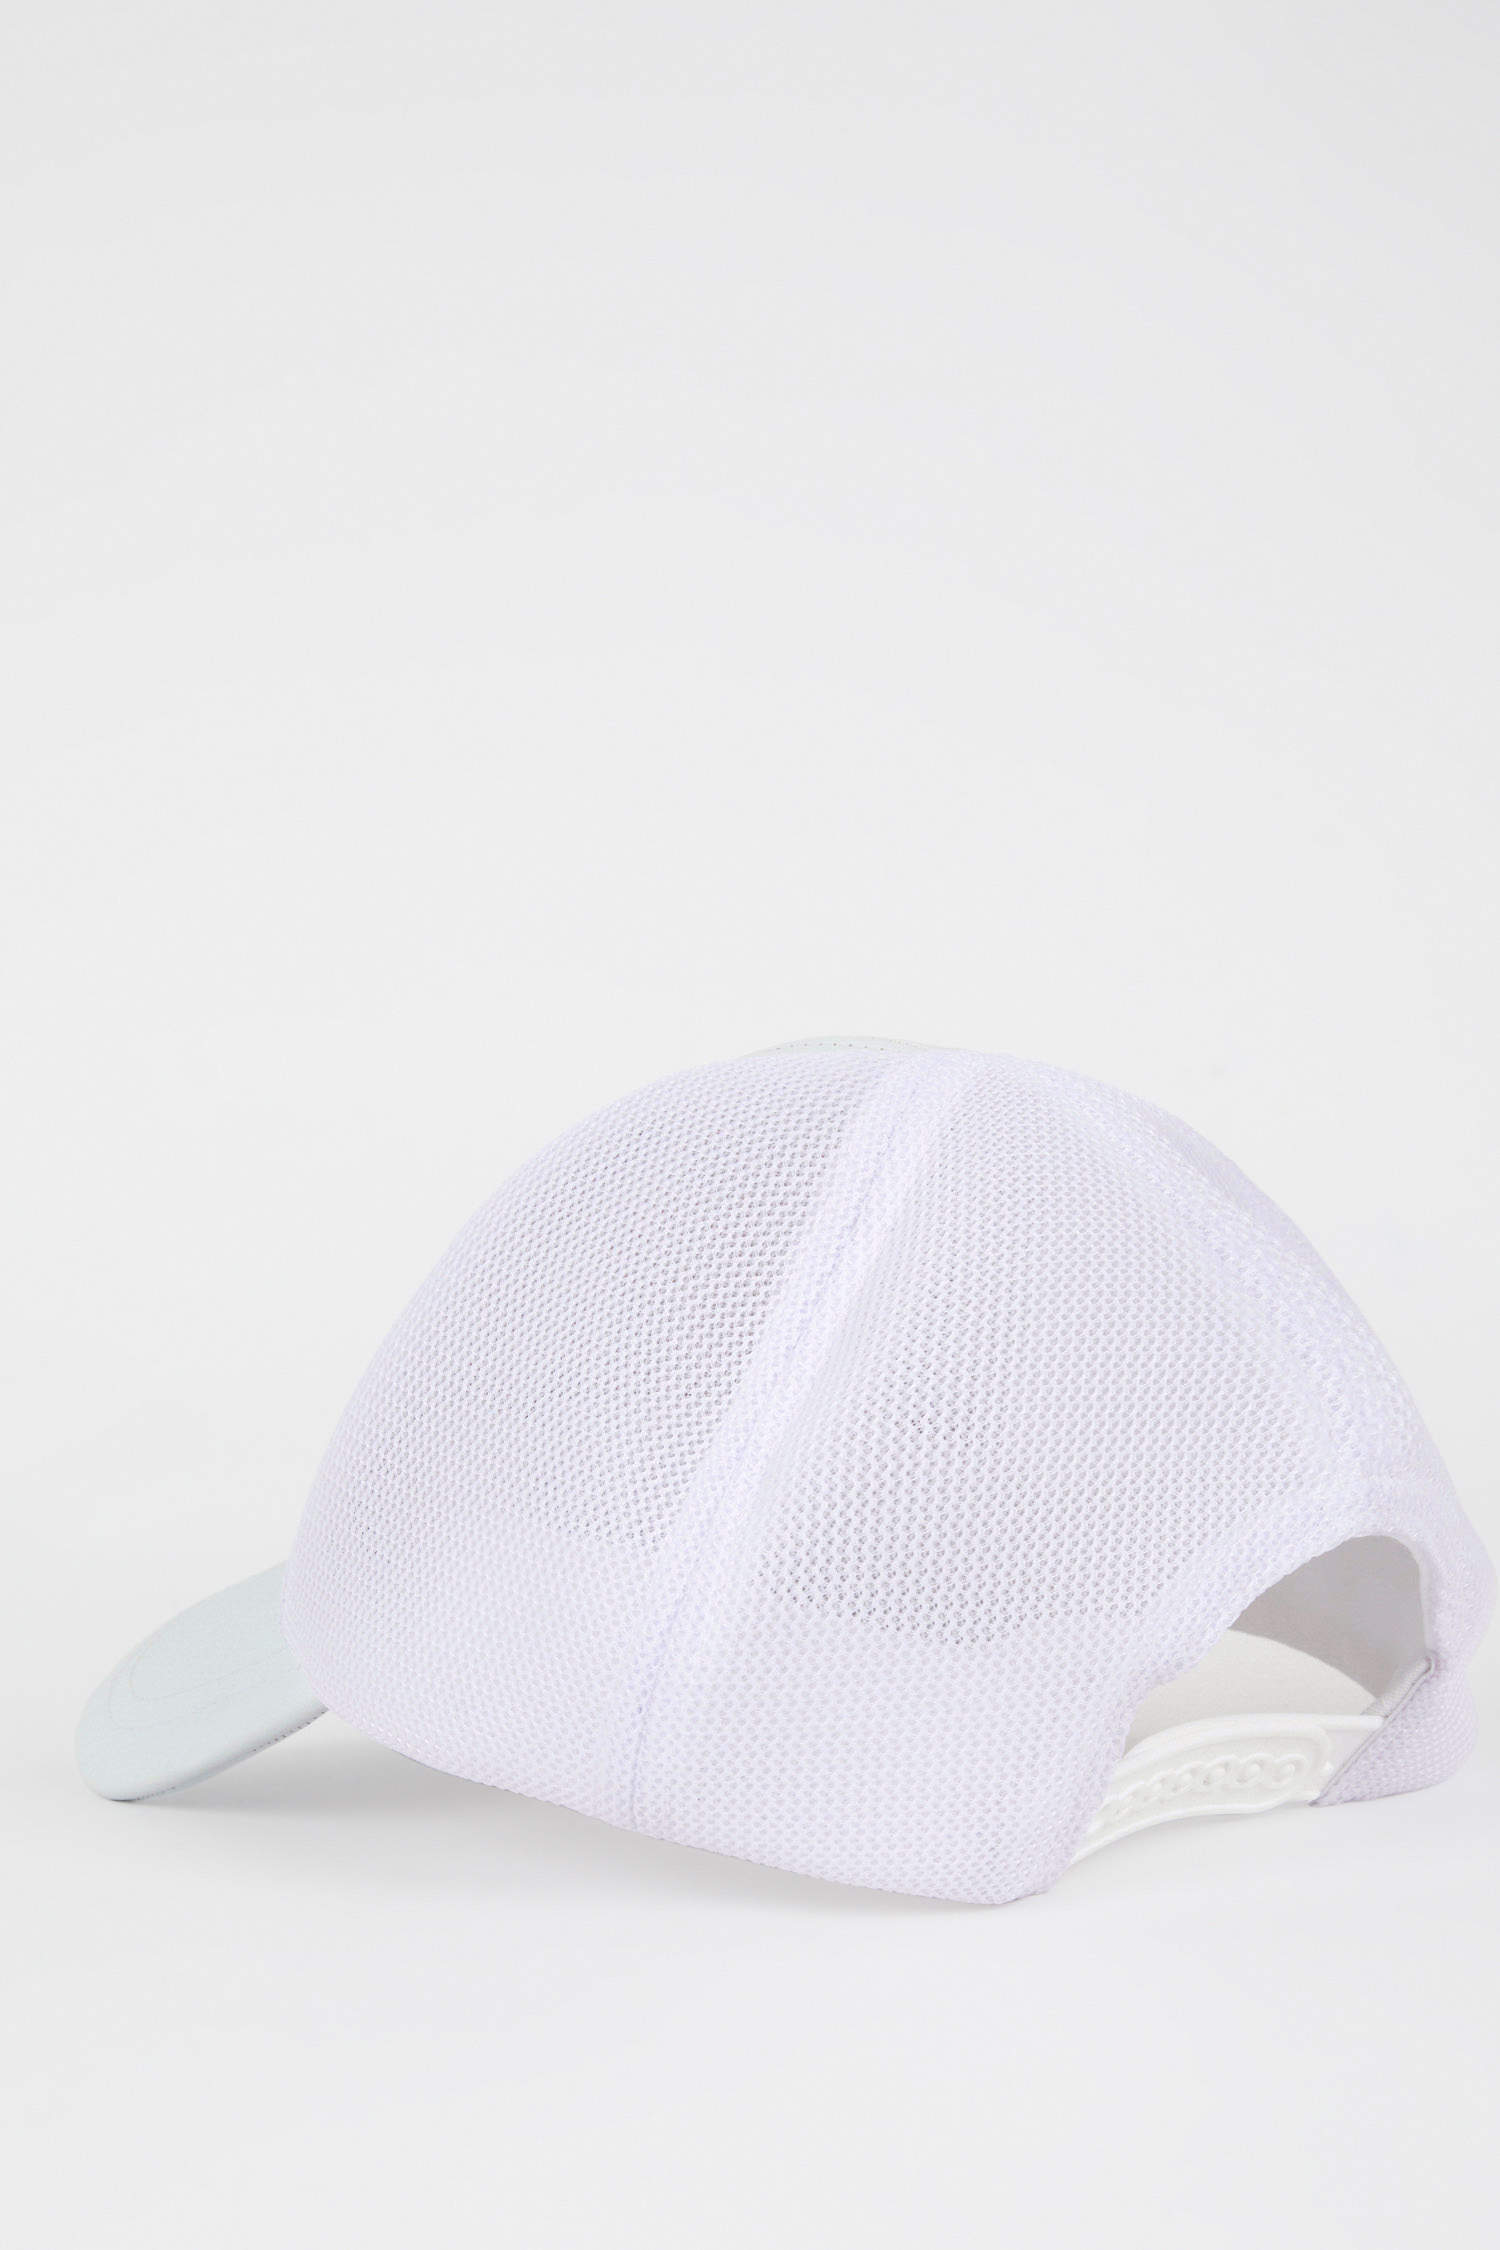 Defacto Kadın Elma Derisi Geri Dönüşümlü Beyaz Cap Şapka. 10